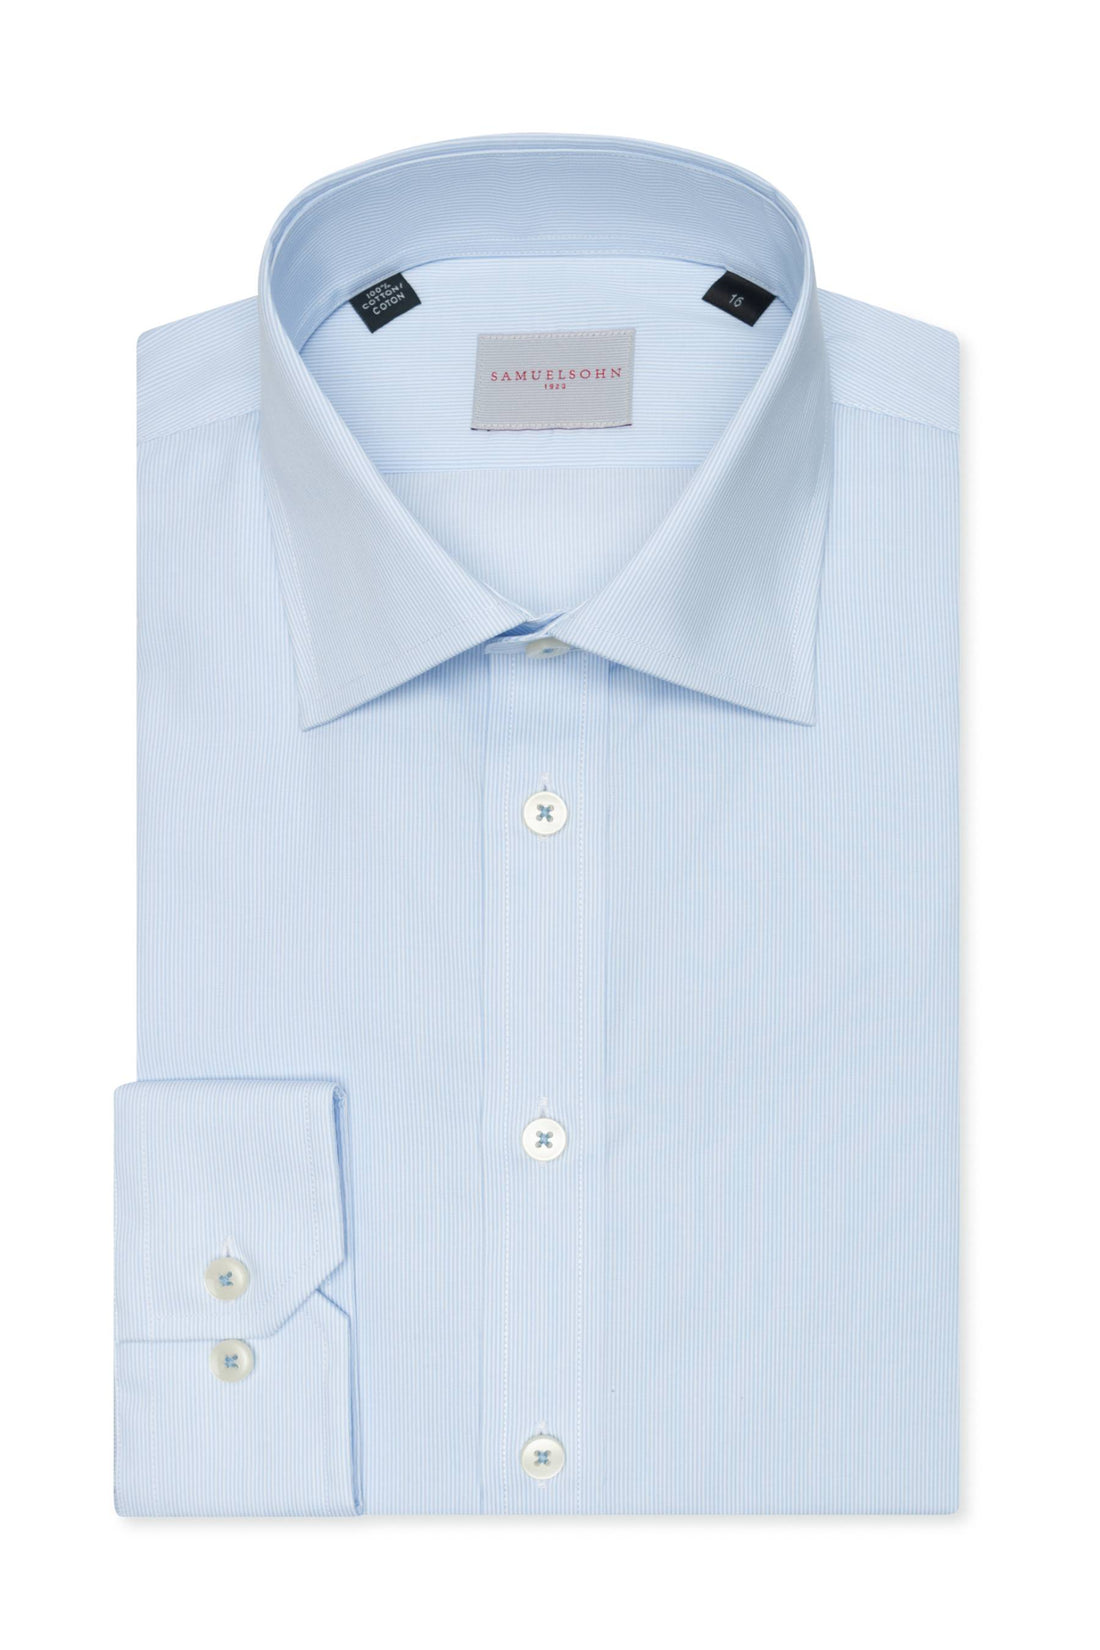 Samuelsohn Blue Pinstripe Contemporary Fit Easy Care Shirt